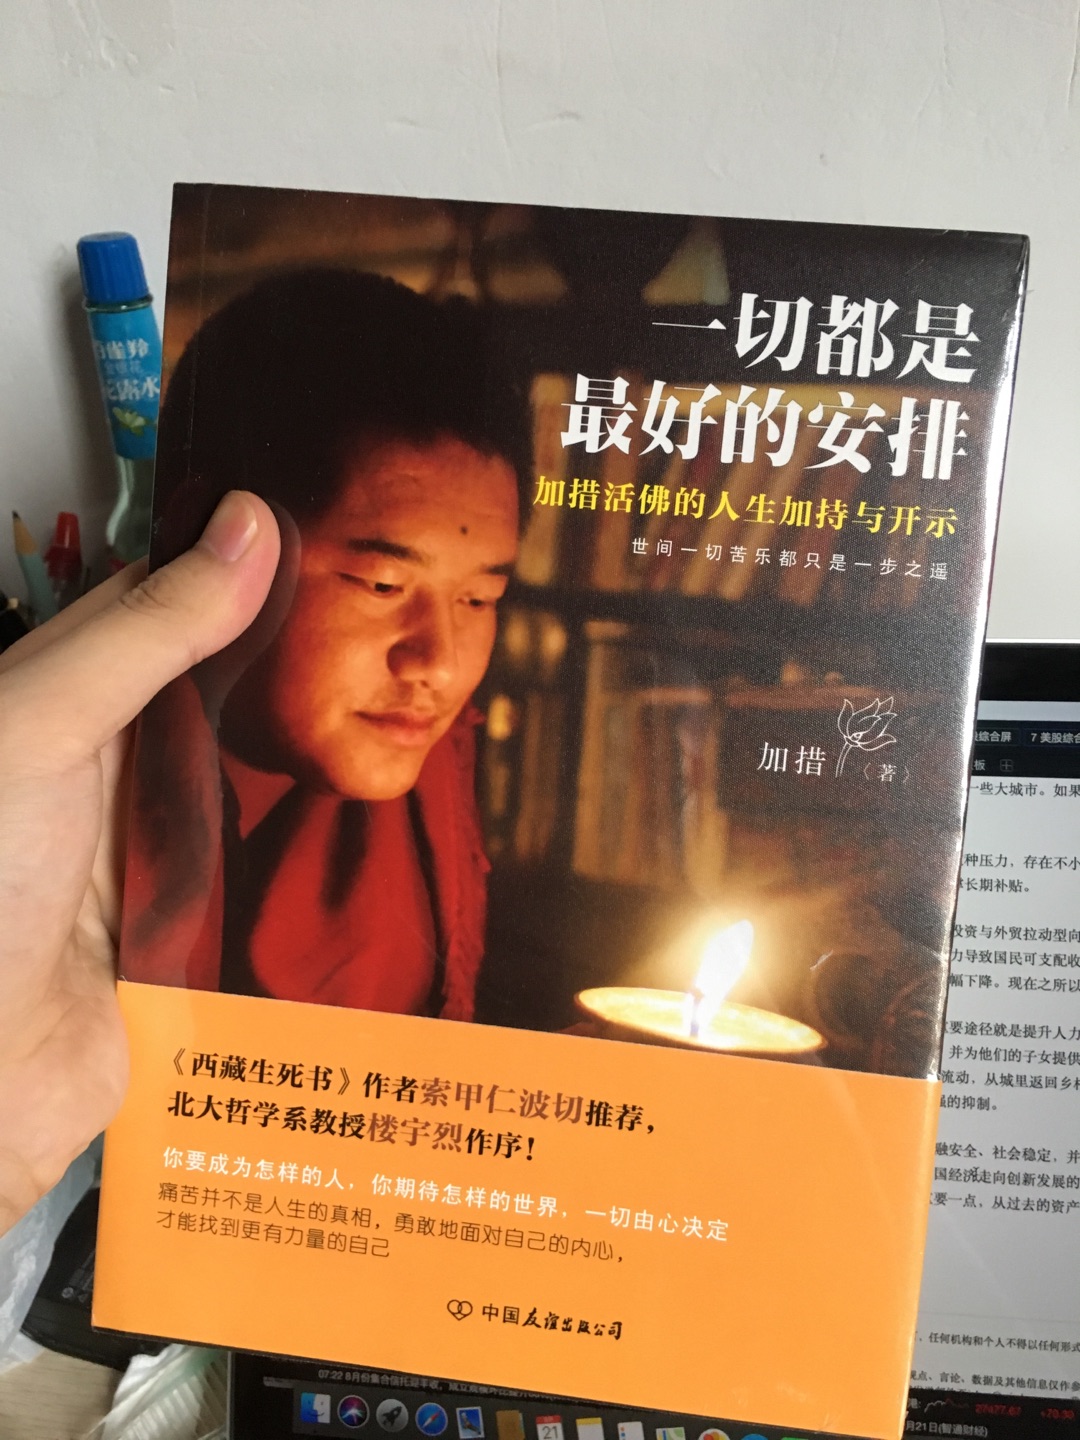 很好的一本书很有意义的最开始是看他的西藏生死书知道的，启发一下还是不错的